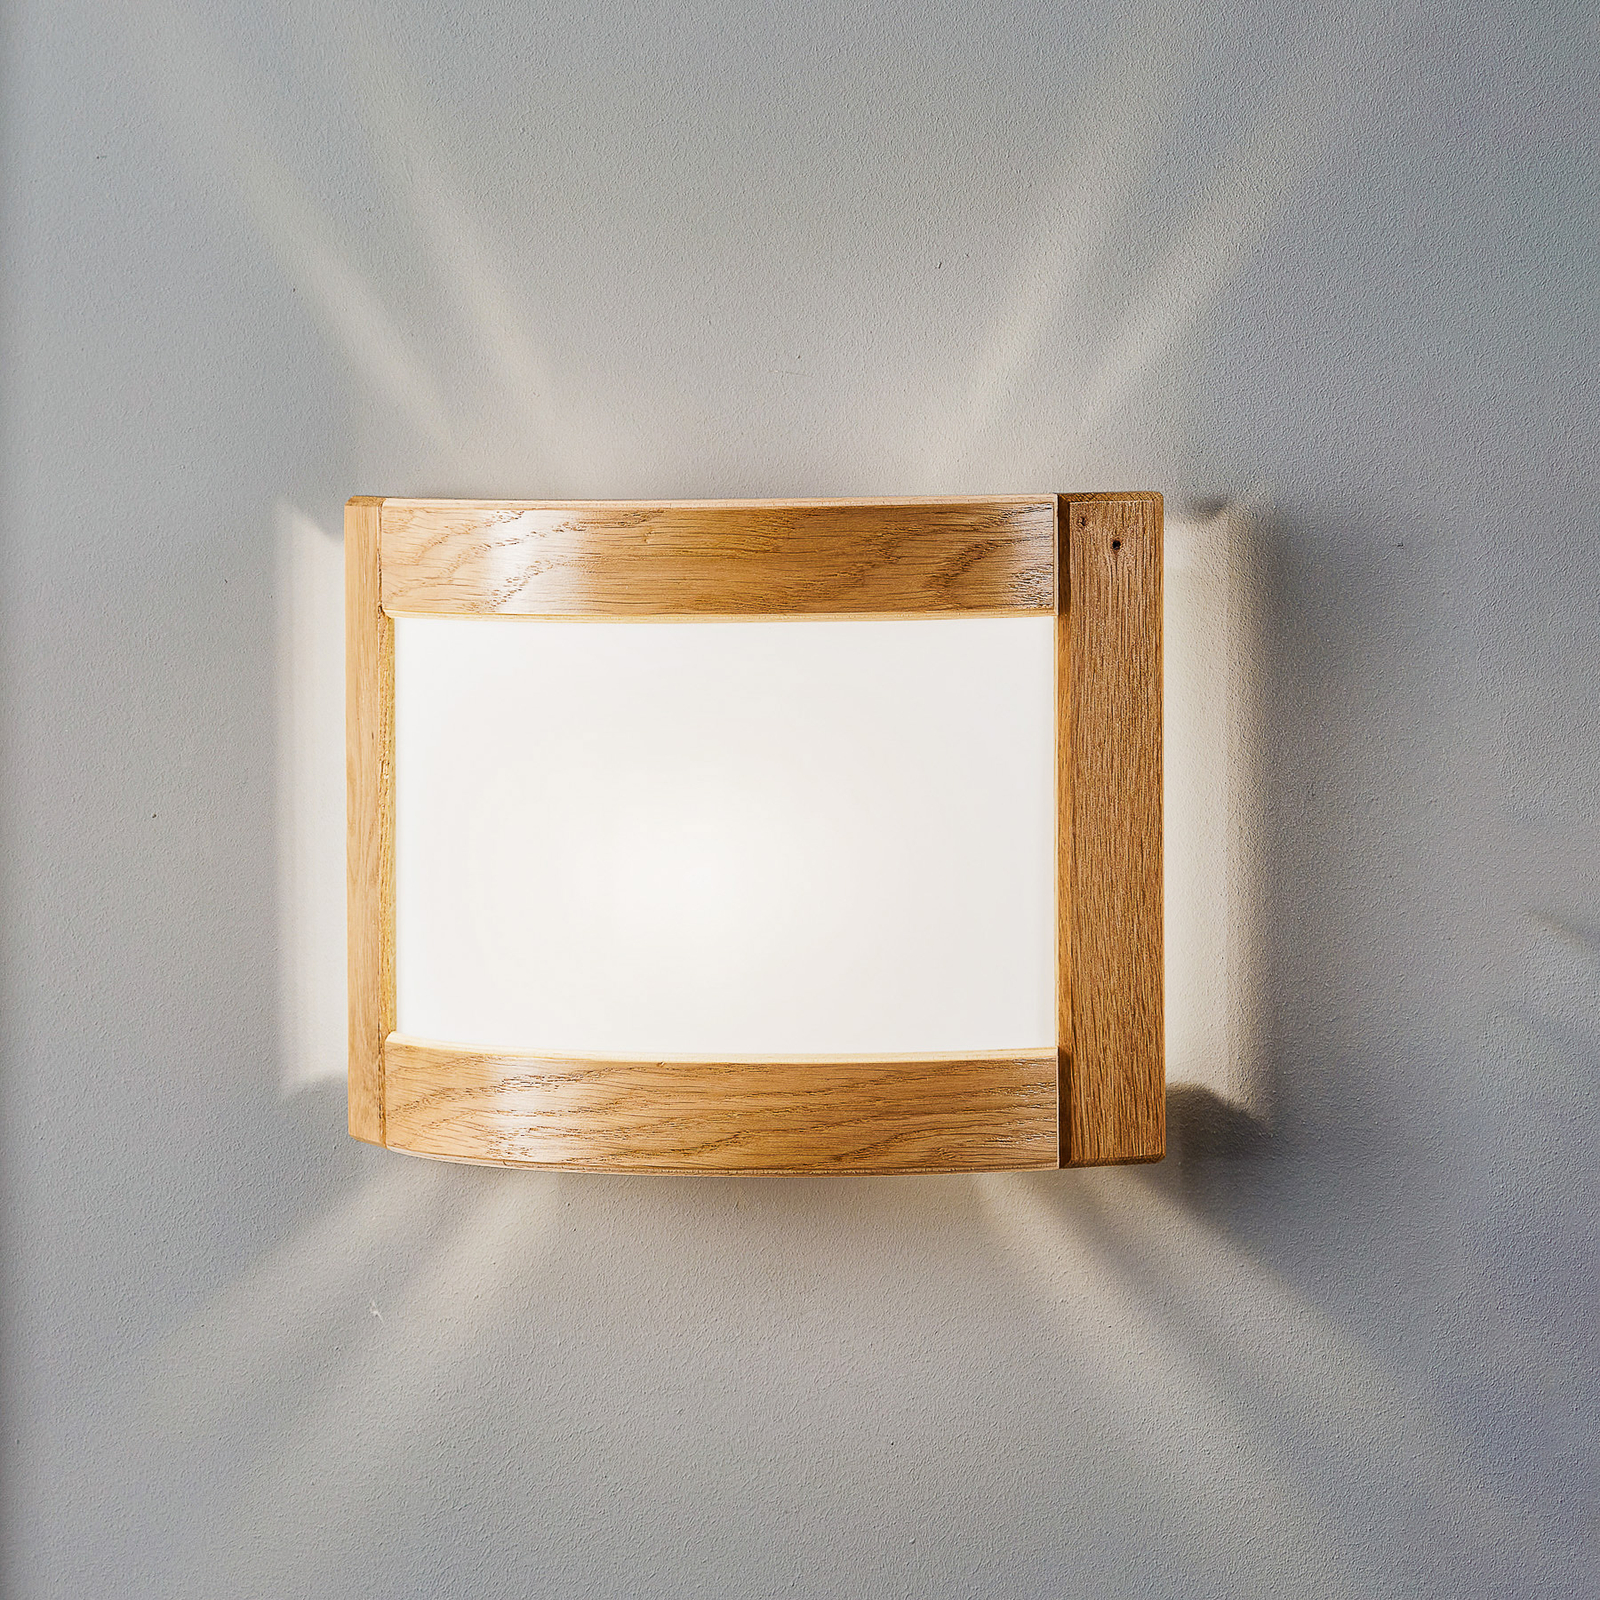 Vägglampa Zanna av trä, höjd 22 cm, ljus ek